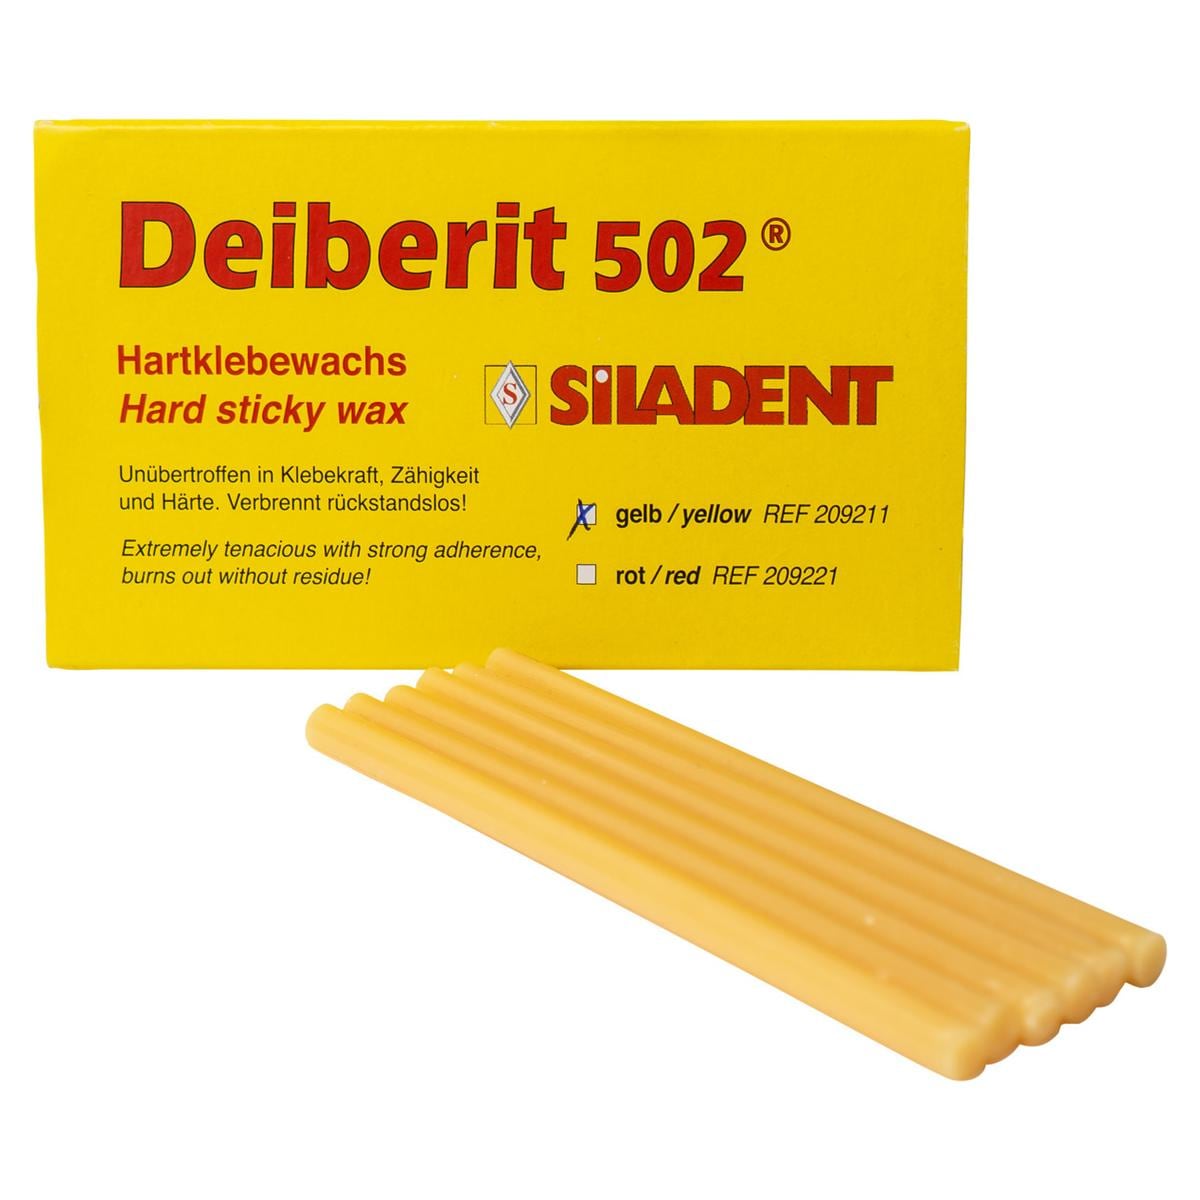 Deiberit 502® Hartklebewachs - Gelb, Stangen 10 Stück